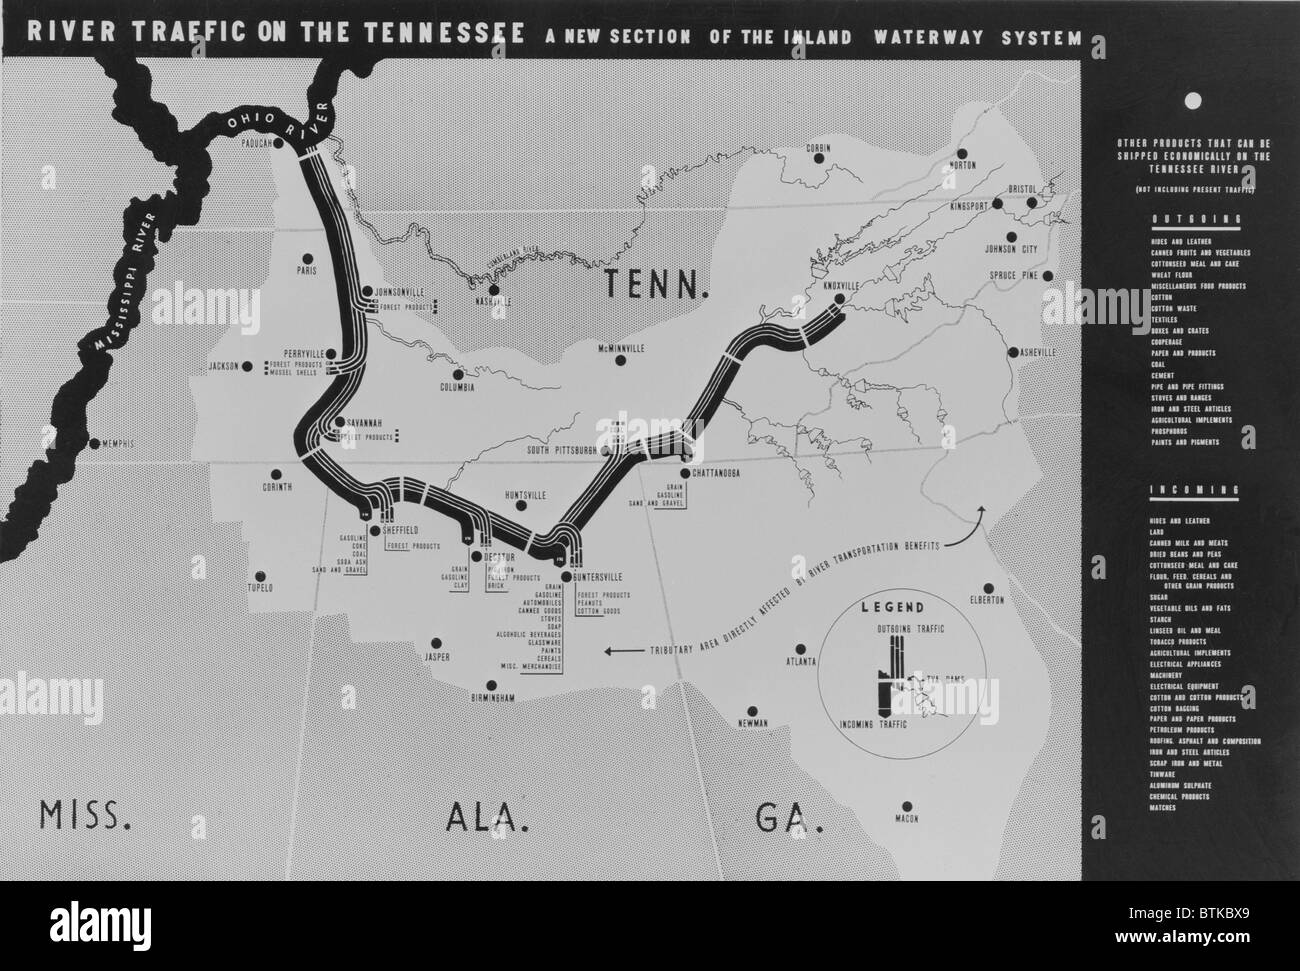 Gli schemi della mappa il trasporto fluviale piano di sviluppo per il nuovo accordo del progetto di opere pubbliche autorizzate quando il presidente Franklin D. Roosevelt ha firmato la Tennessee Valley Authority Act Il 18 maggio 1933, durante i primi cento giorni della sua amministrazione. Foto Stock